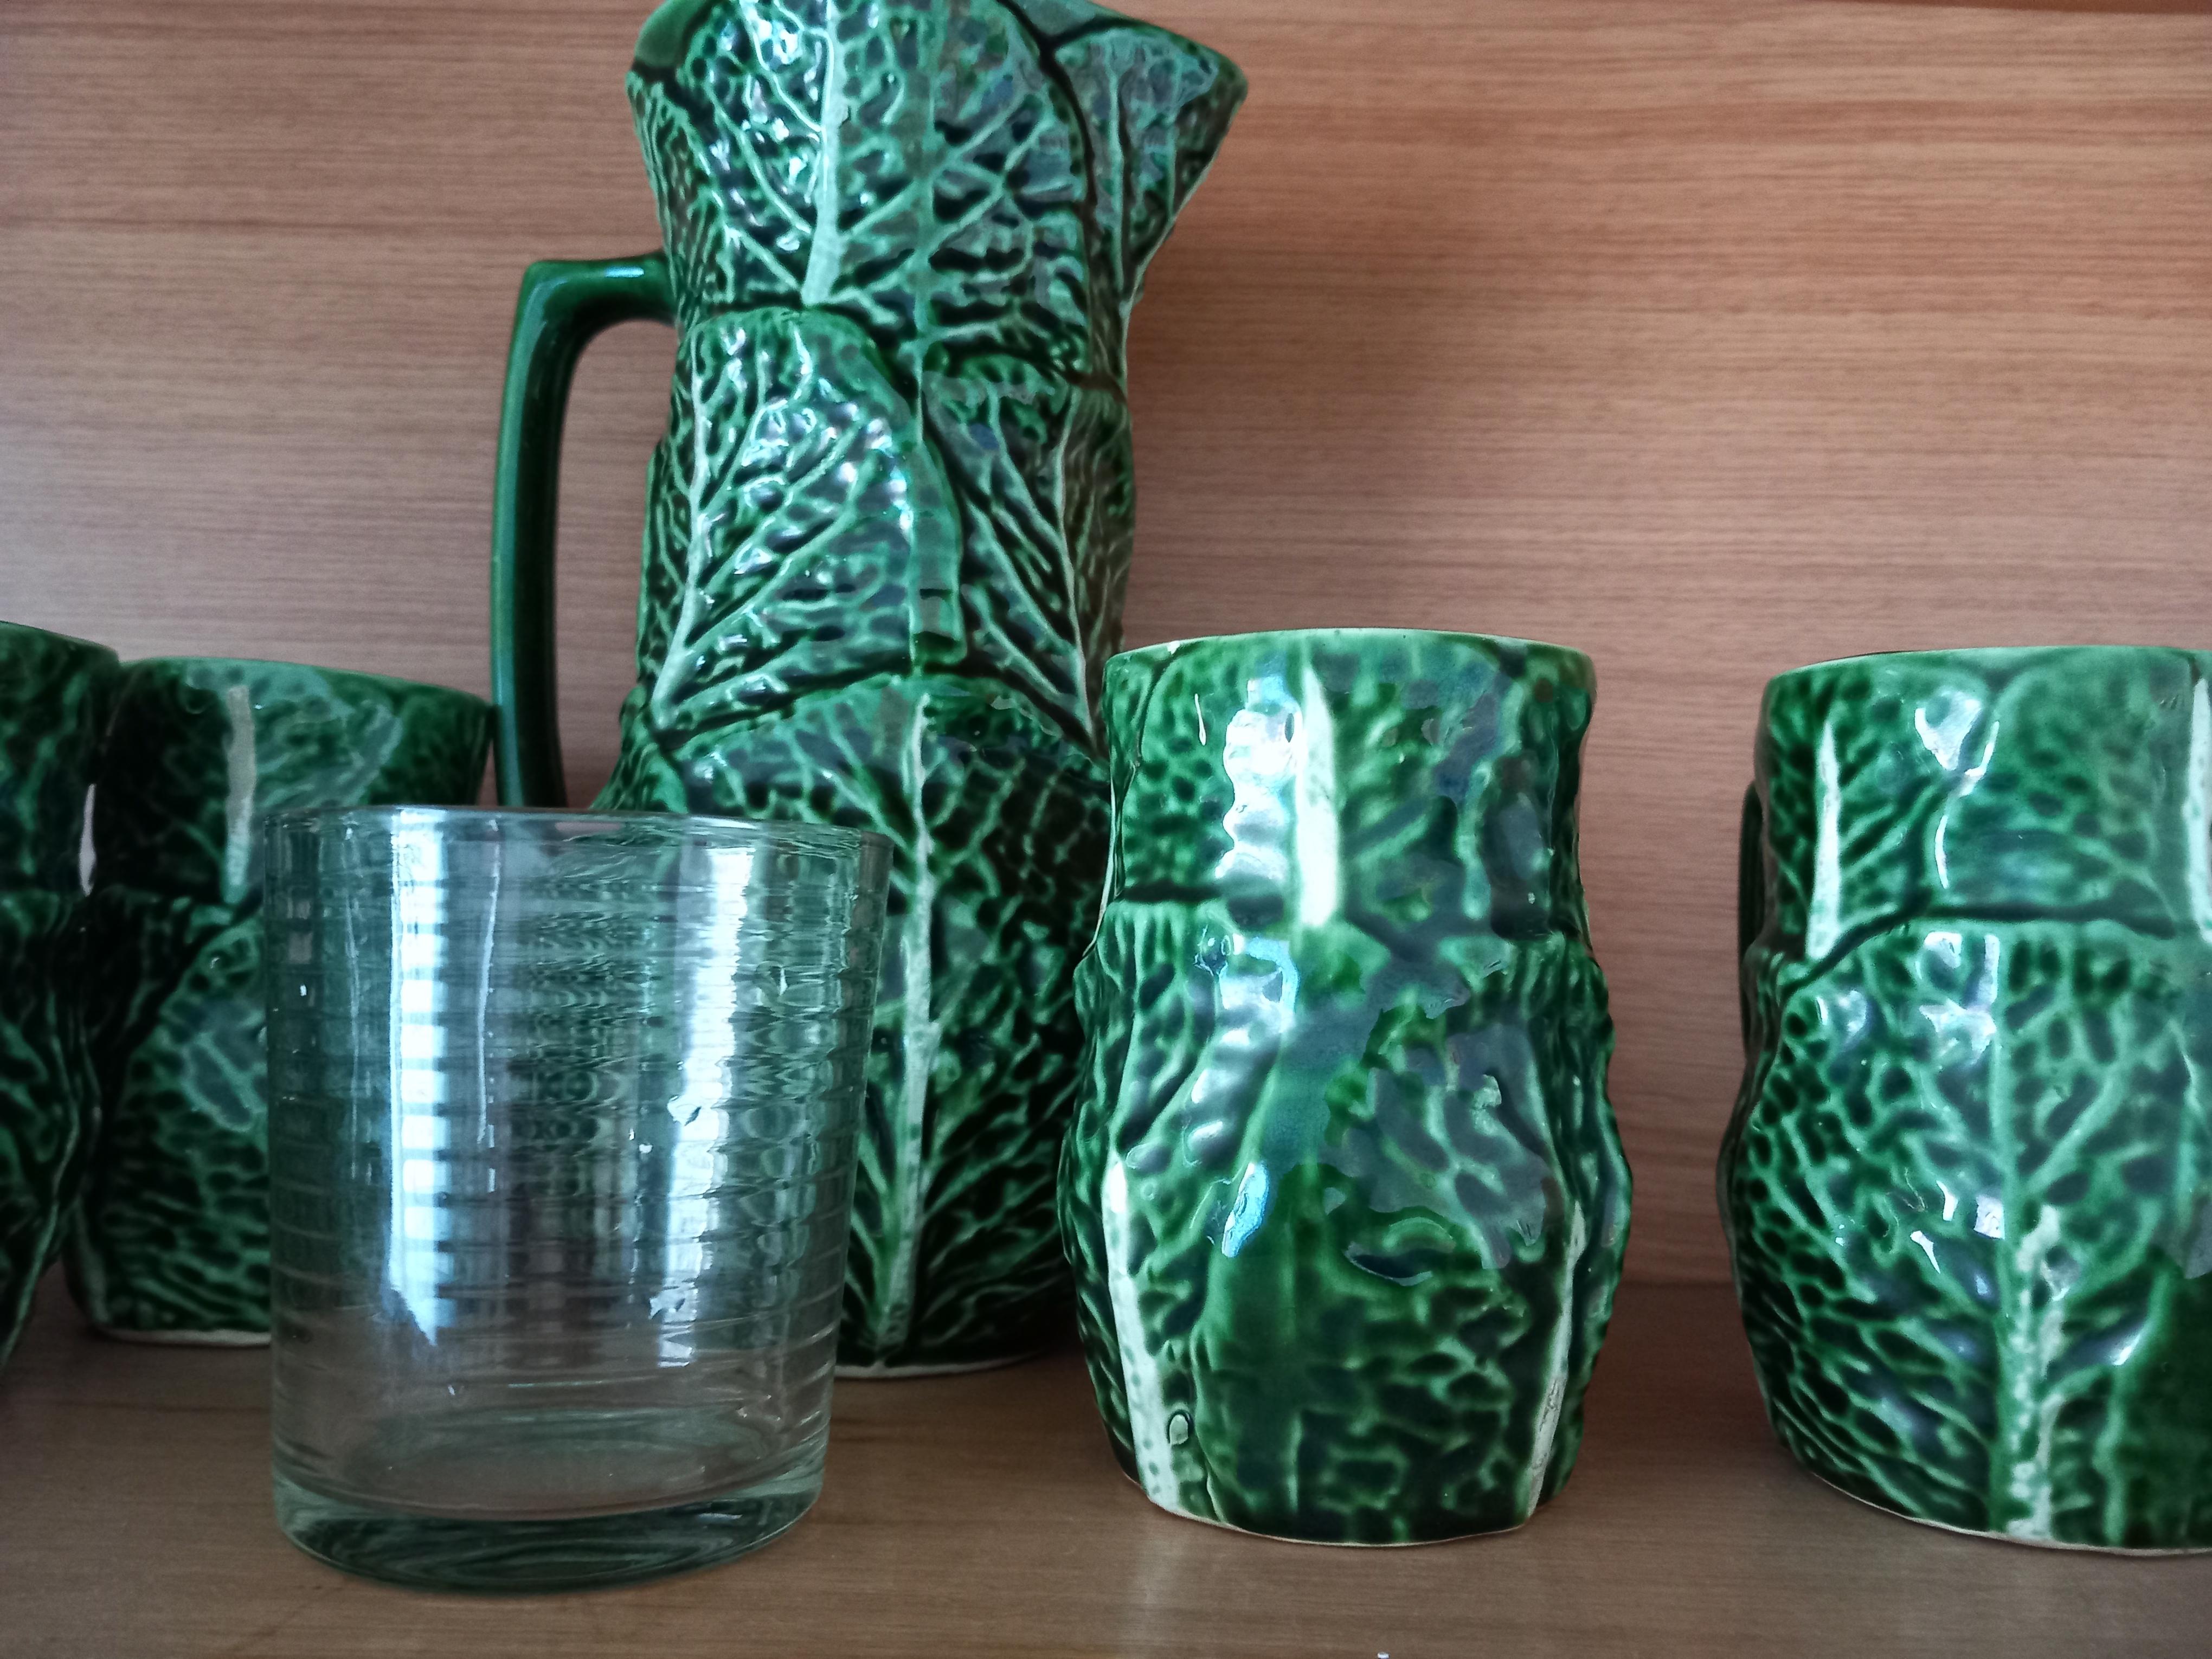 Set aus Majolika-Keramikkrug und Gläsern in Form eines Kohls.
Saft- oder Wasserbecher.
Wie neu, nie benutzt.